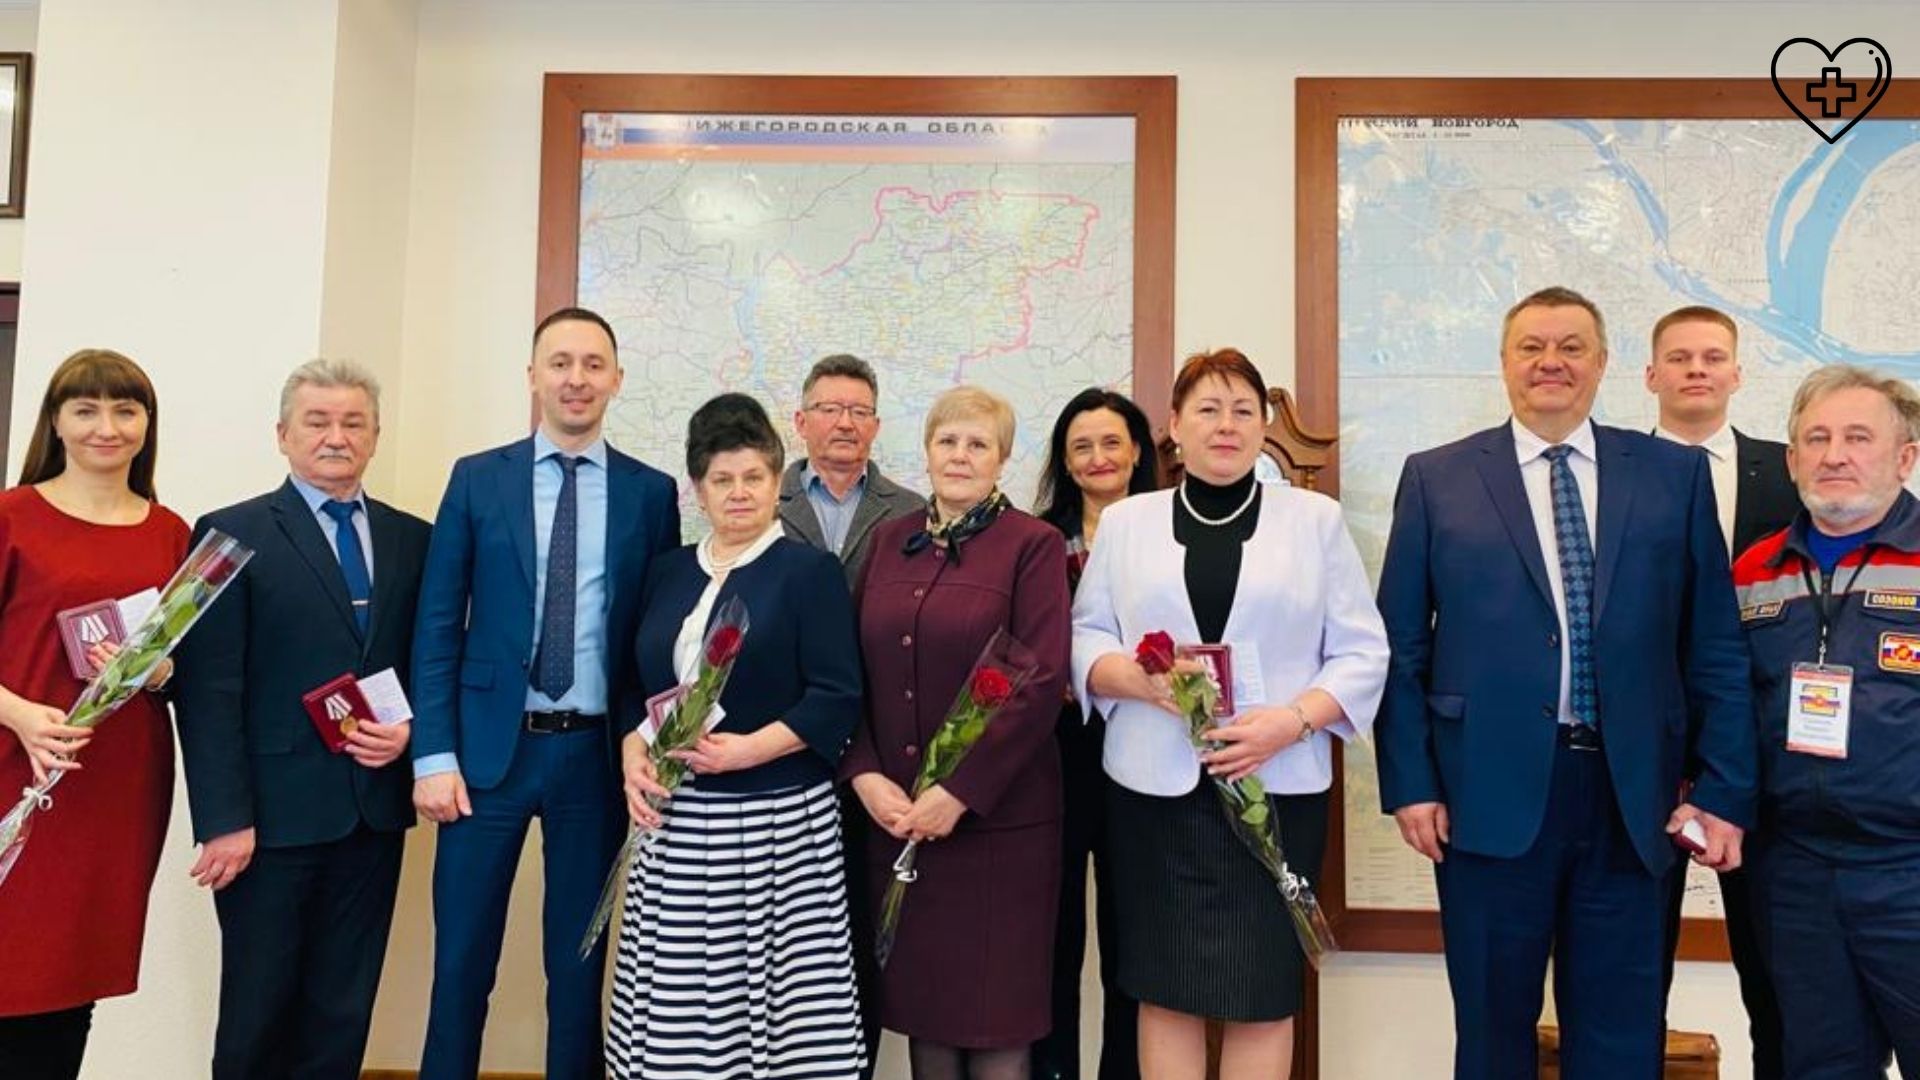 Давид Мелик-Гусейнов наградил нижегородских врачей  памятными медалями в честь 800-летия Нижнего Новгорода 